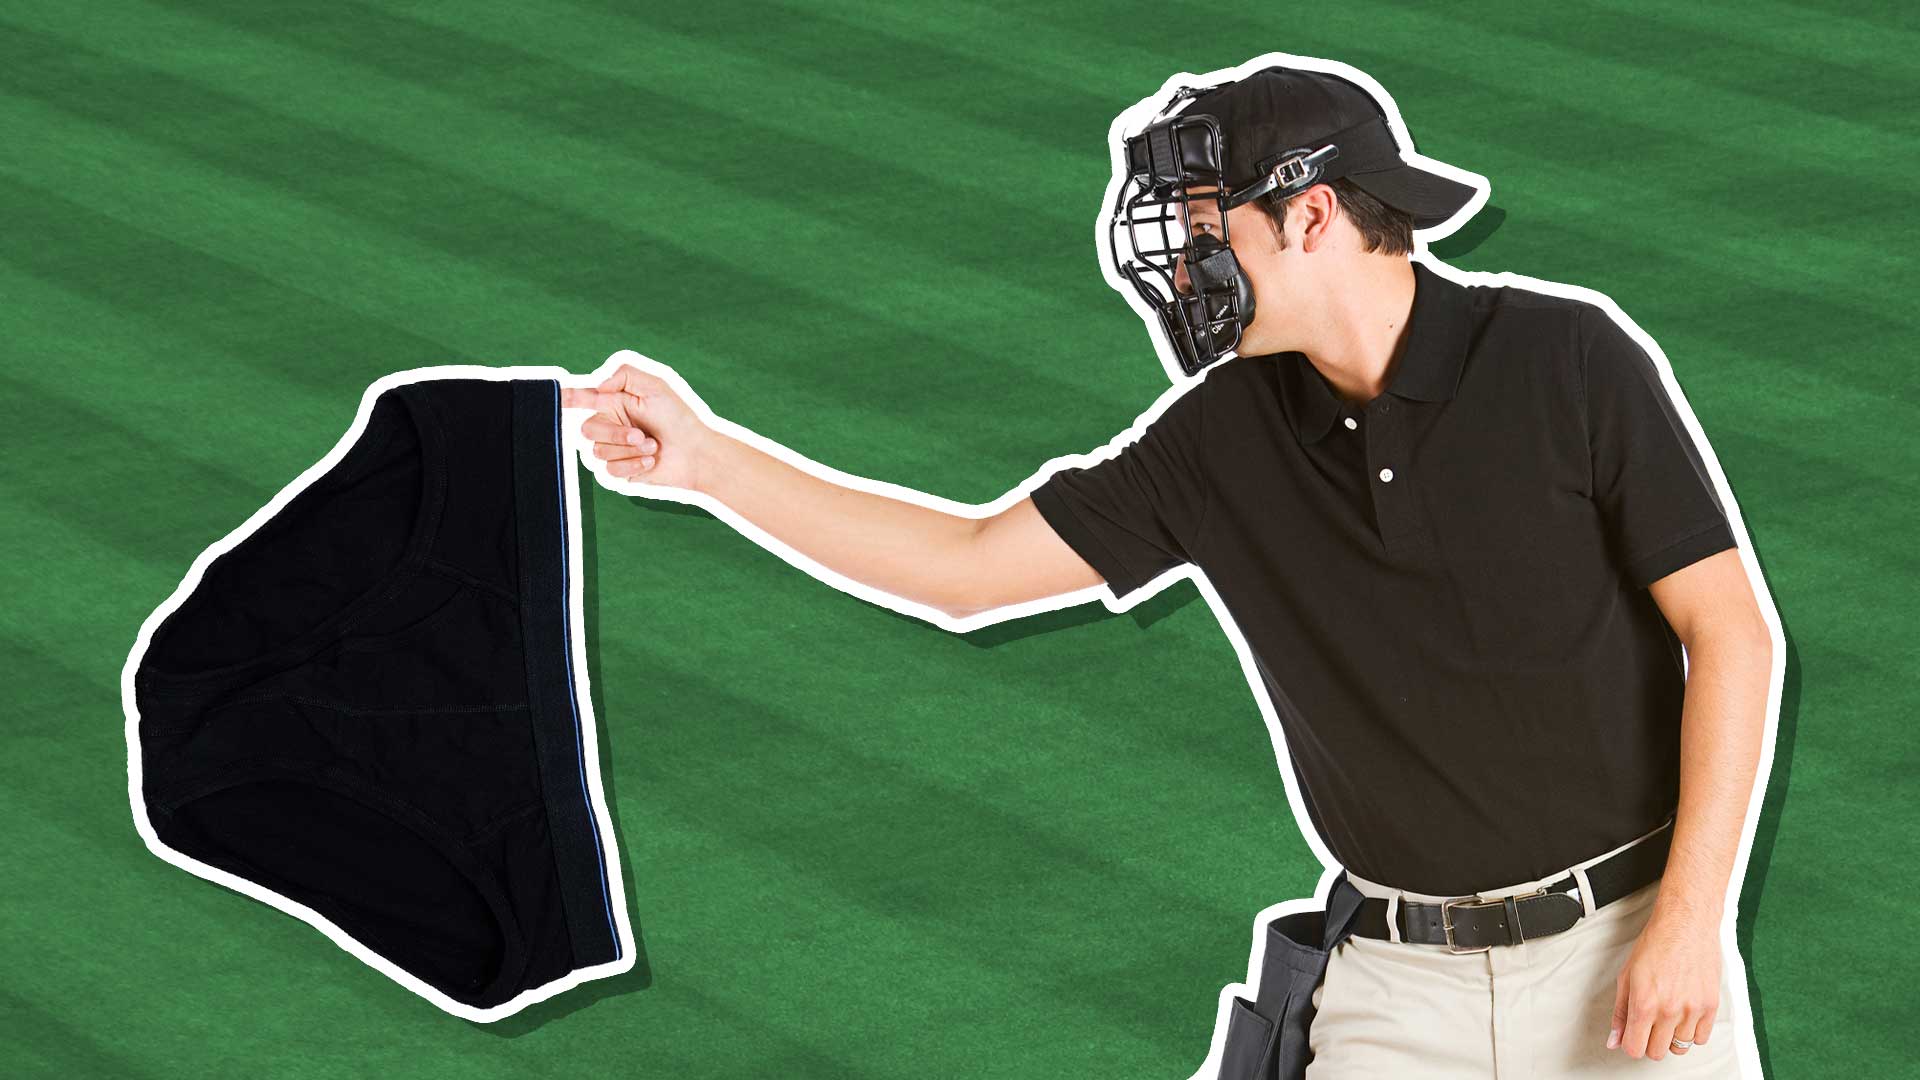 Baseball umpire and pants